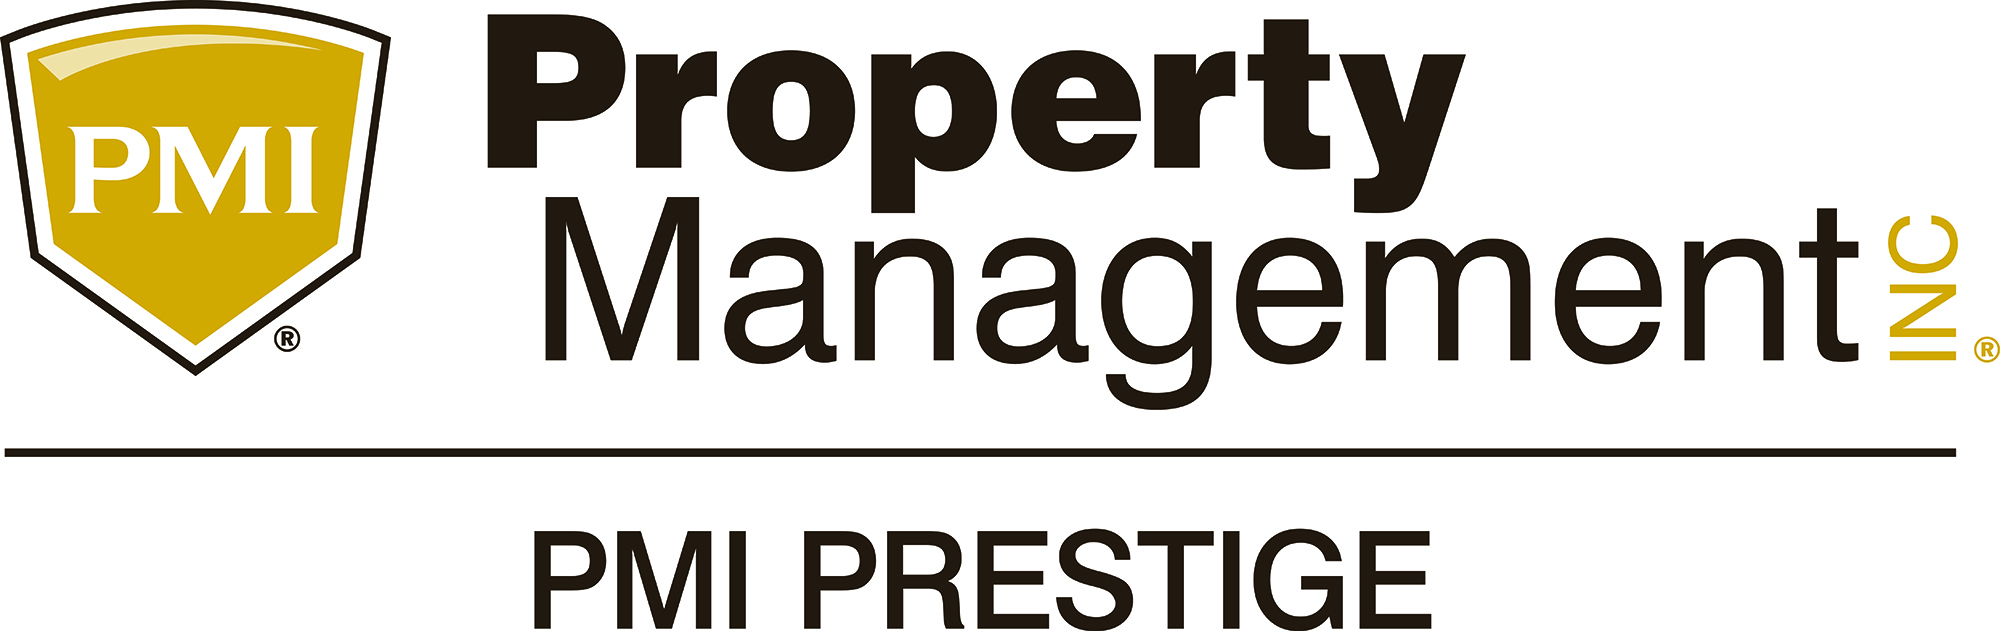 PMI Prestige logo